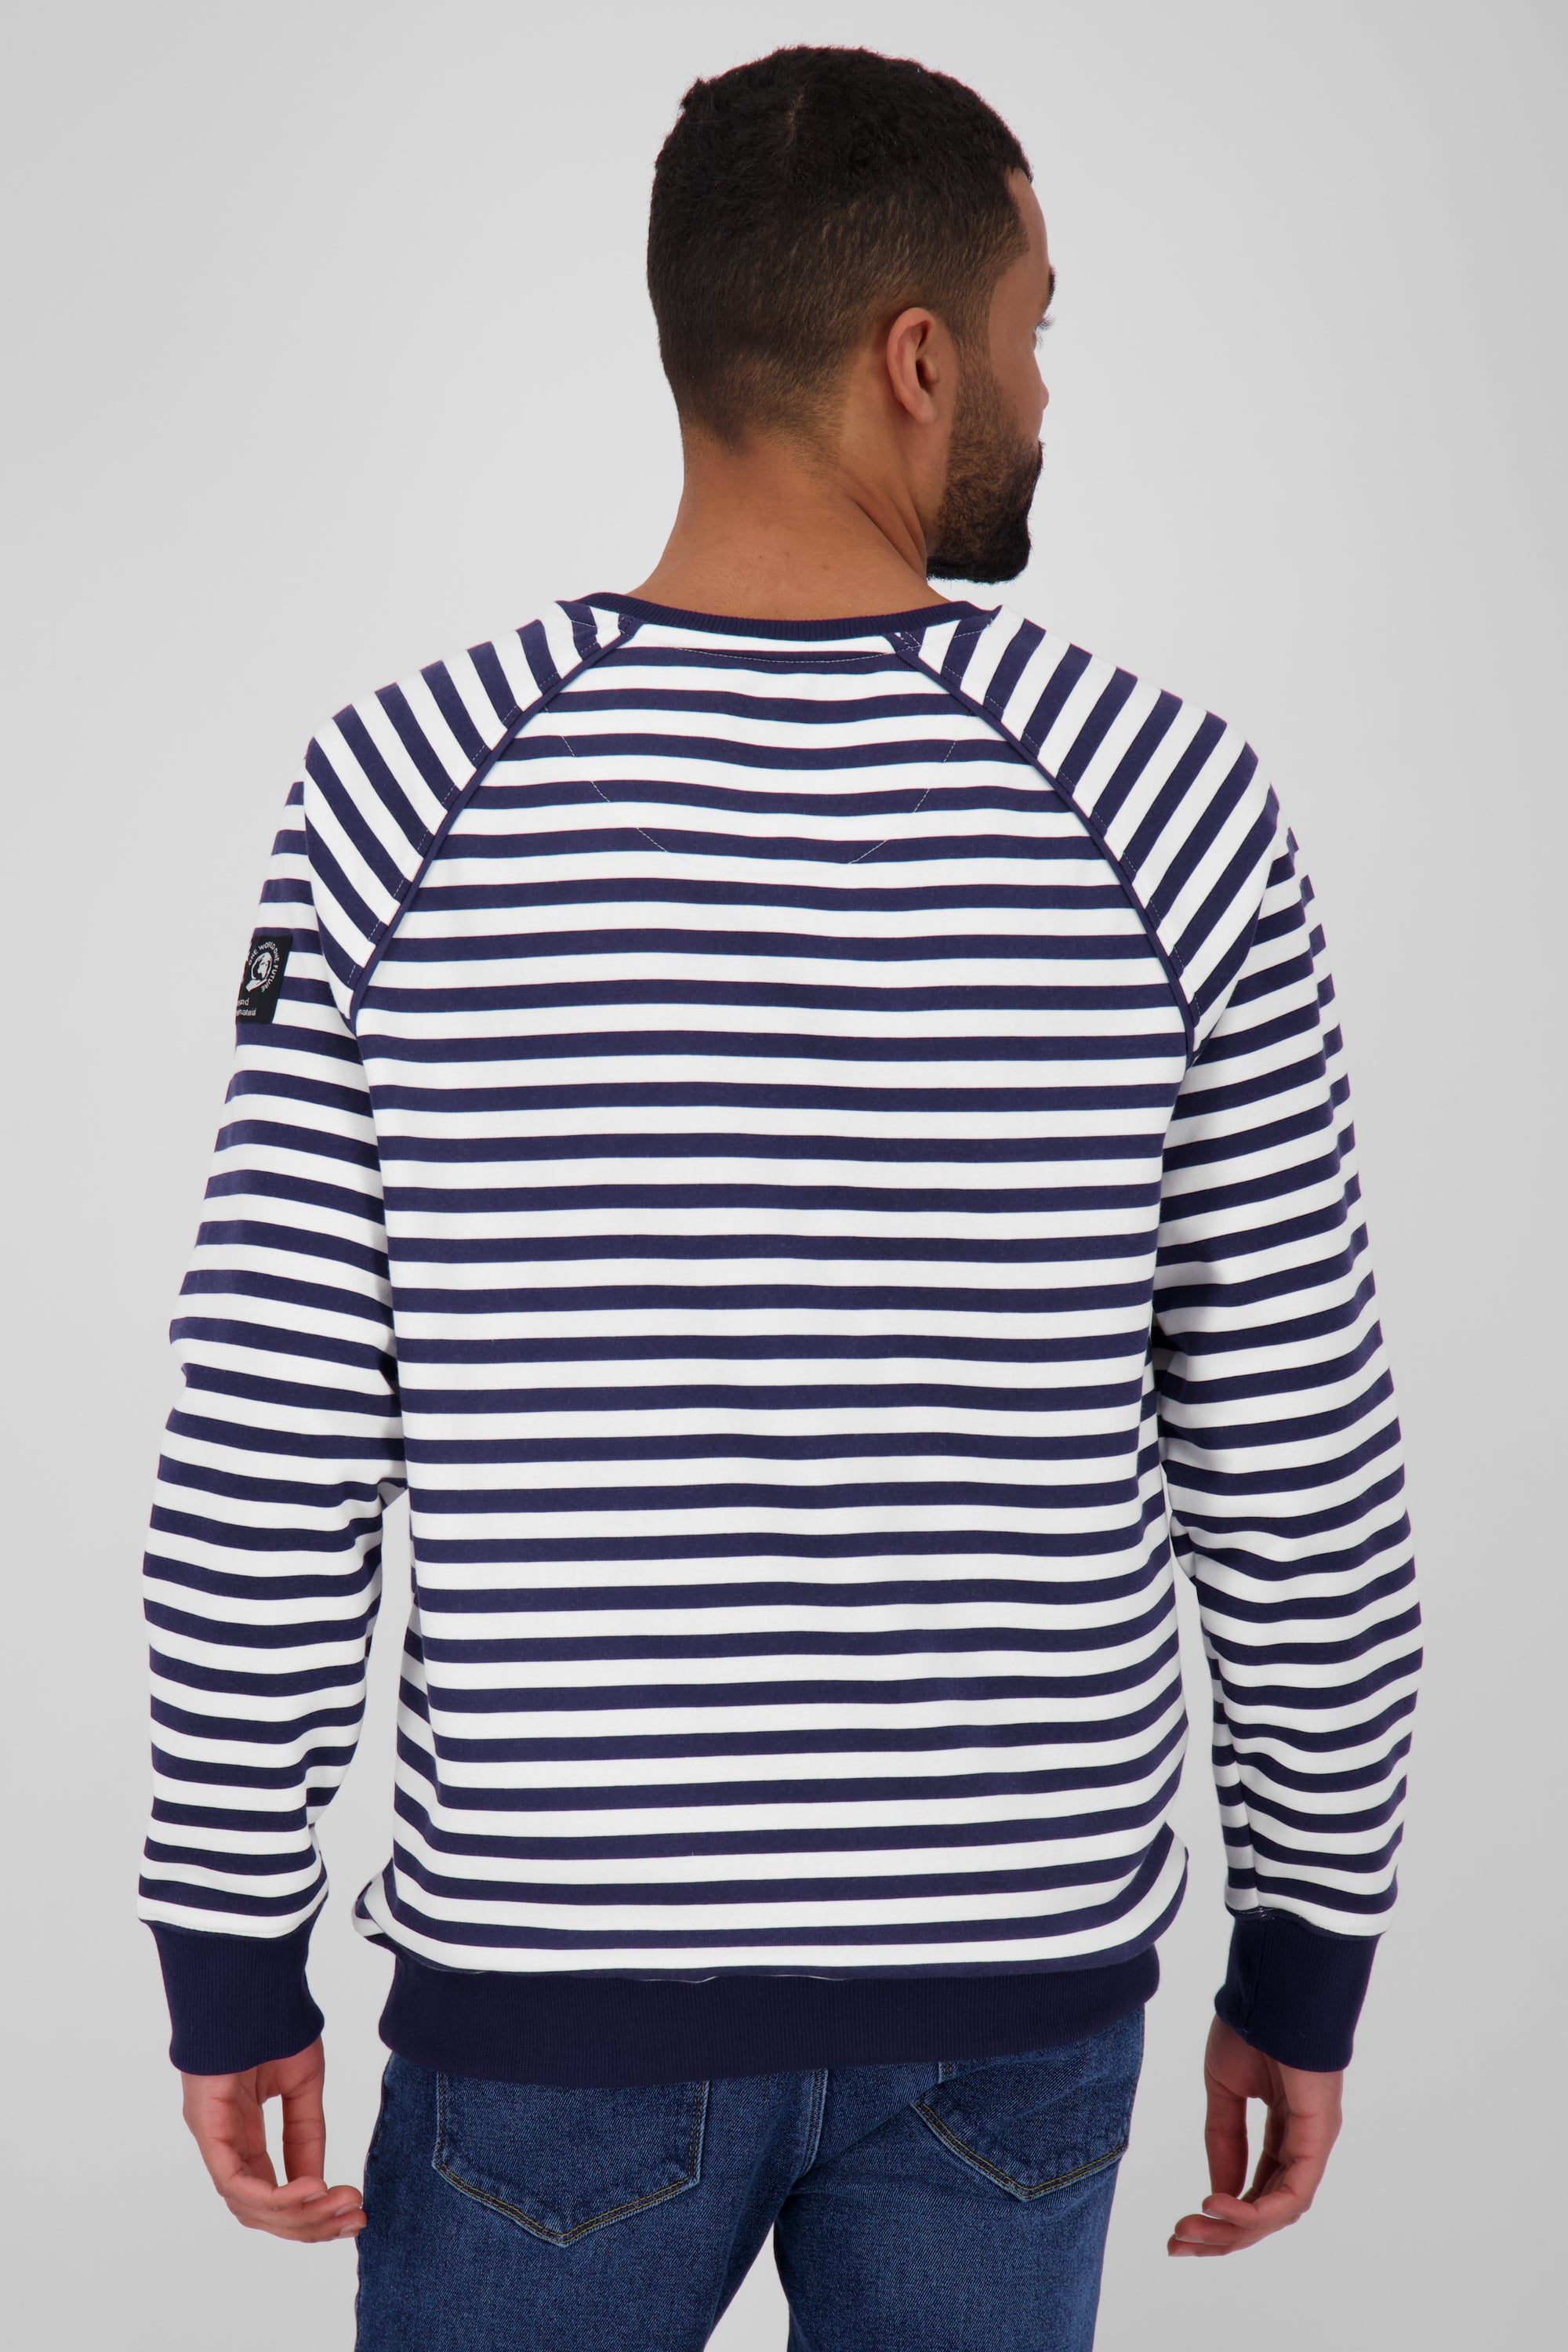 BorisAK Sweatshirt Herren mit Streifen-Design Dunkelblau